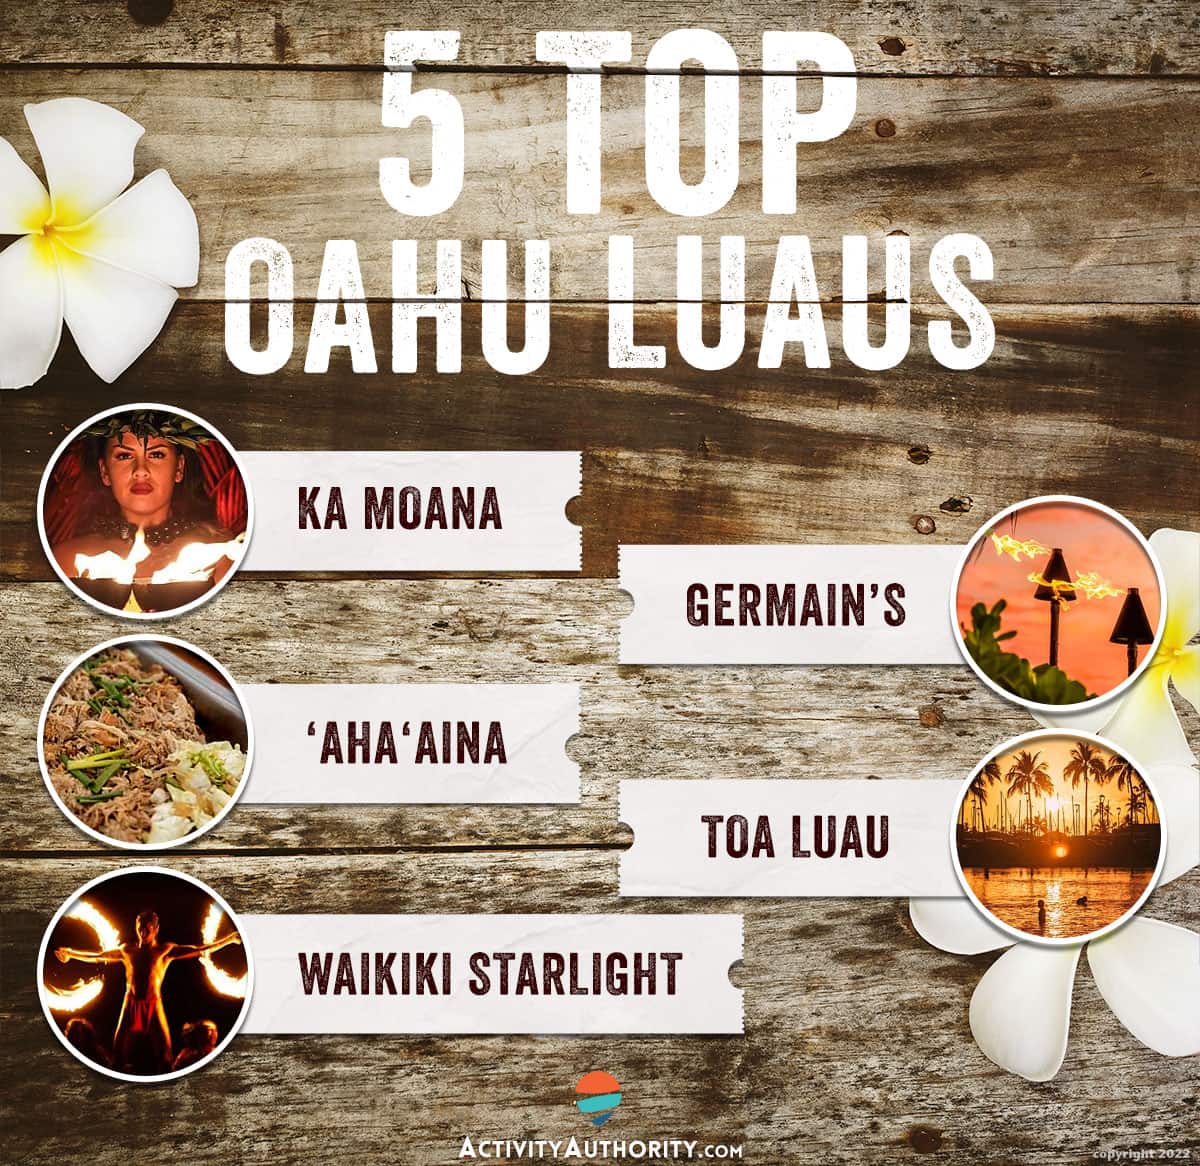 Top Oahu luaus